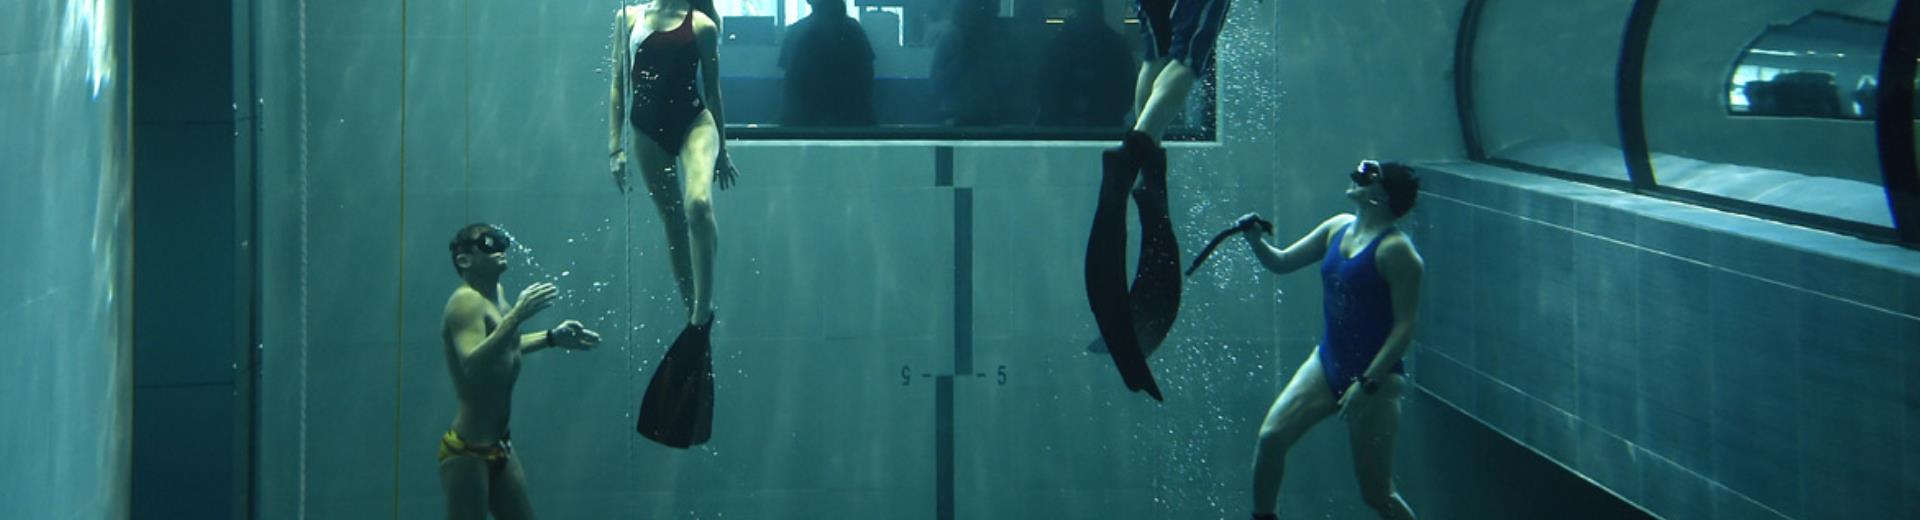 Tuffati nella Y-40, la piscina più profonda del mondo con il BW Plus Hotel Galileo